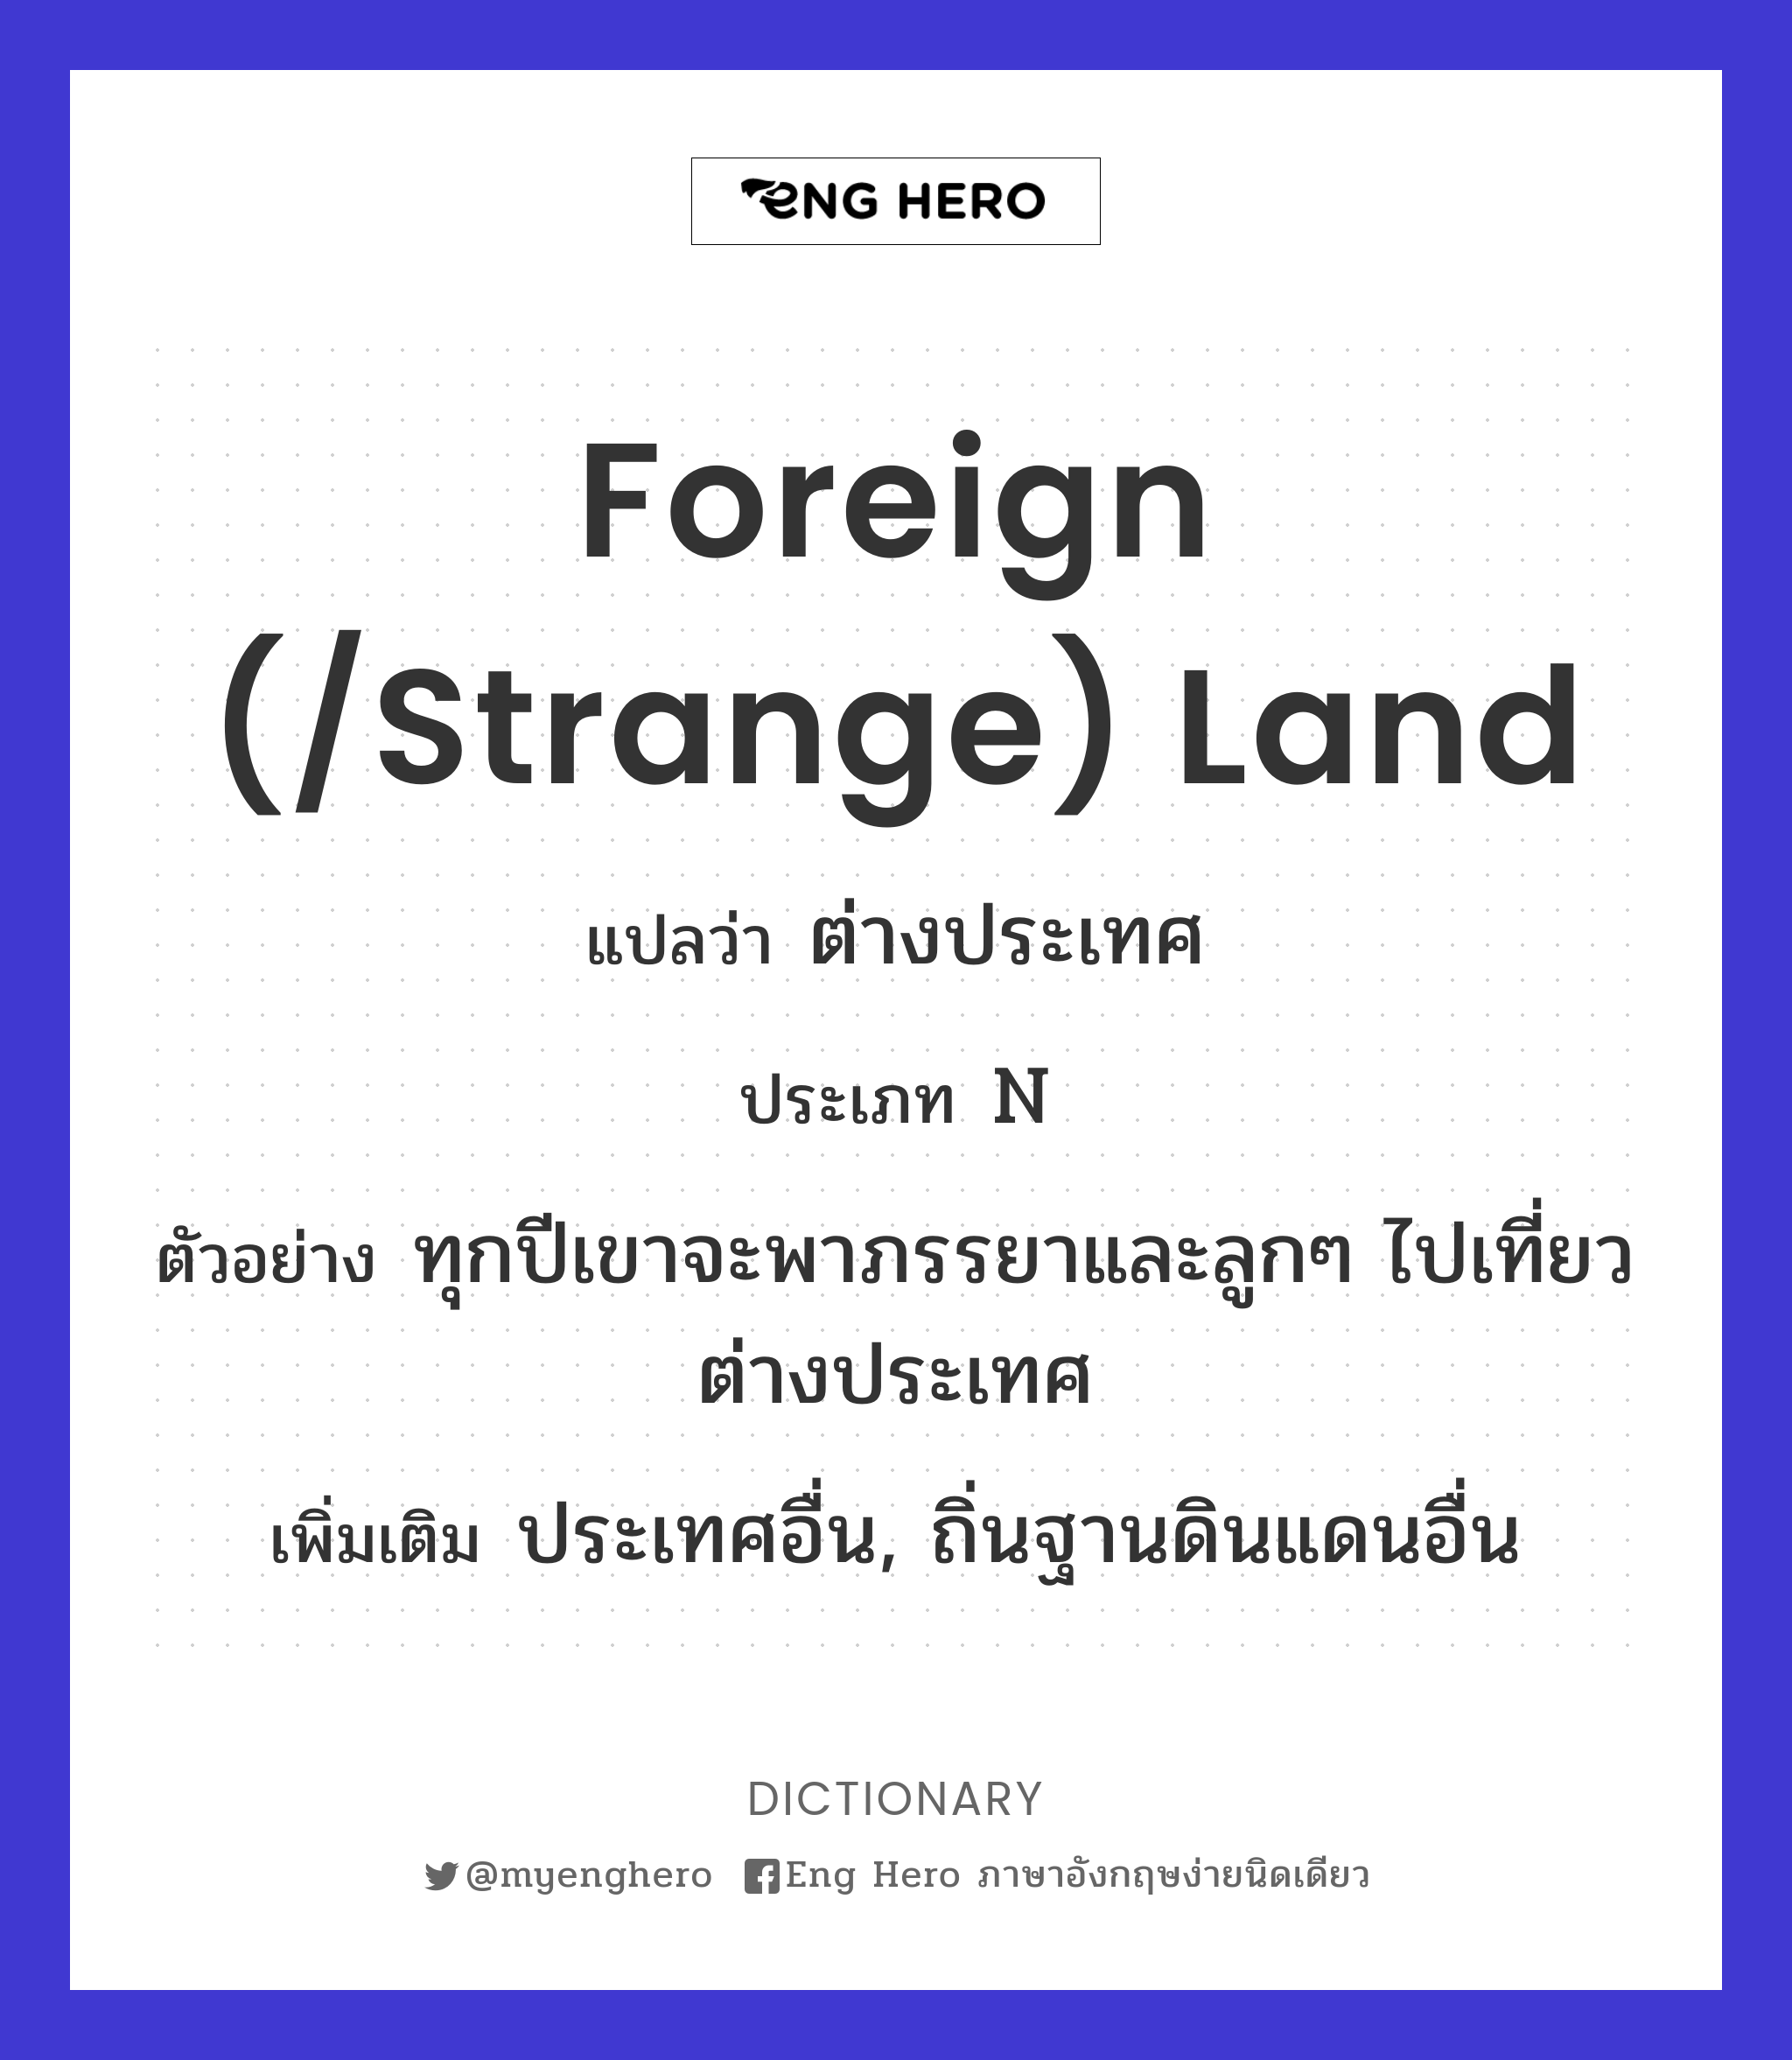 foreign (/strange) land